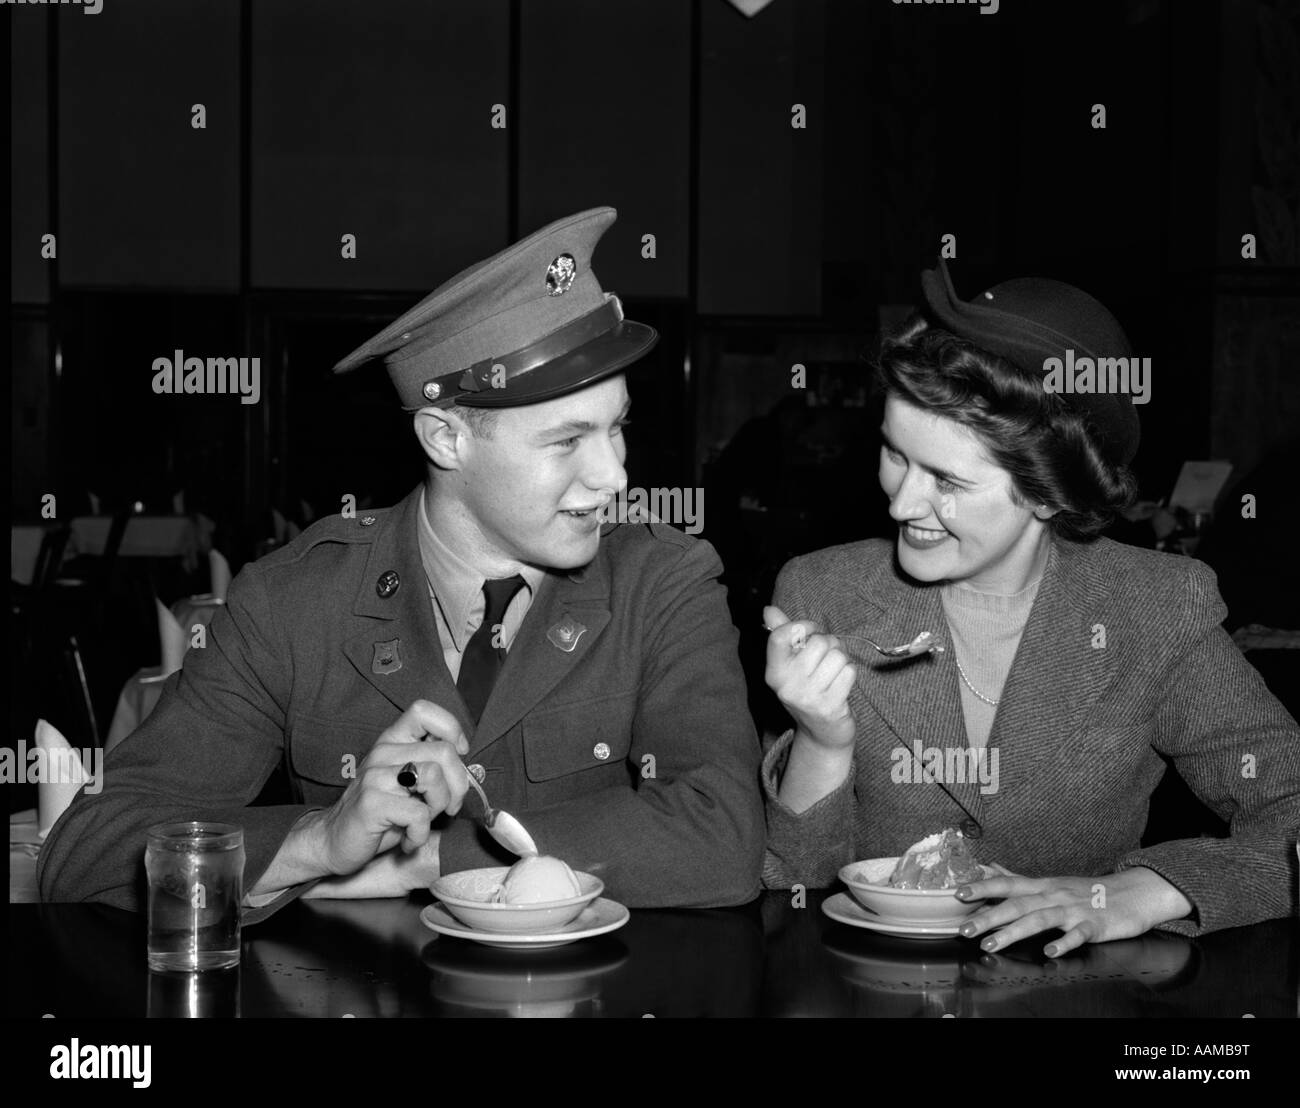 1940 SMILING COUPLE HOMME soldat en uniforme de l'Armée de terre et la femme blonde assise à la fontaine de SODA MANGER COMPTEUR PLAT DE LA CRÈME GLACÉE Banque D'Images